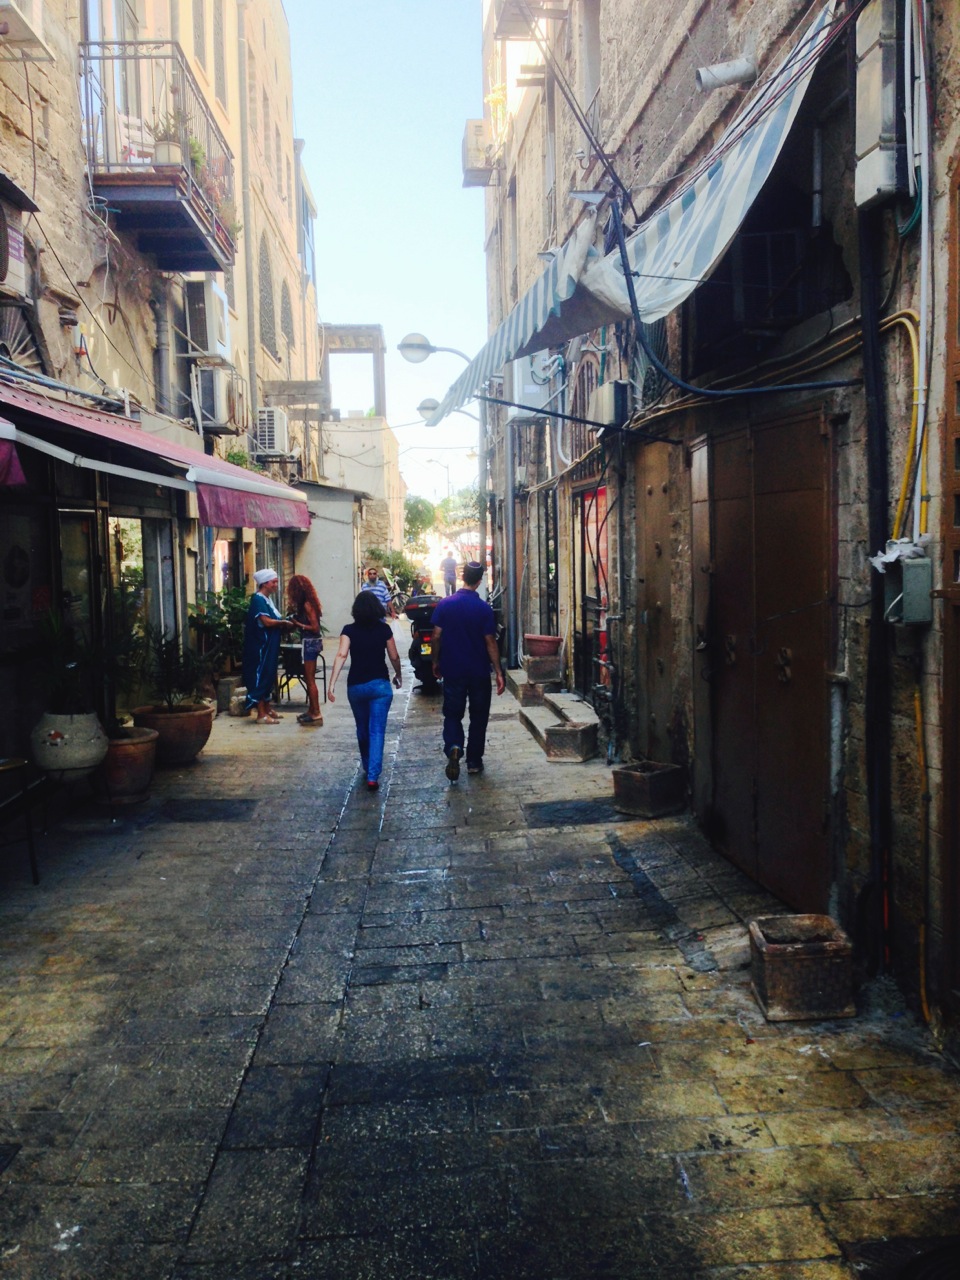 Pics from Street Wisdom in Jaffa, Israel,